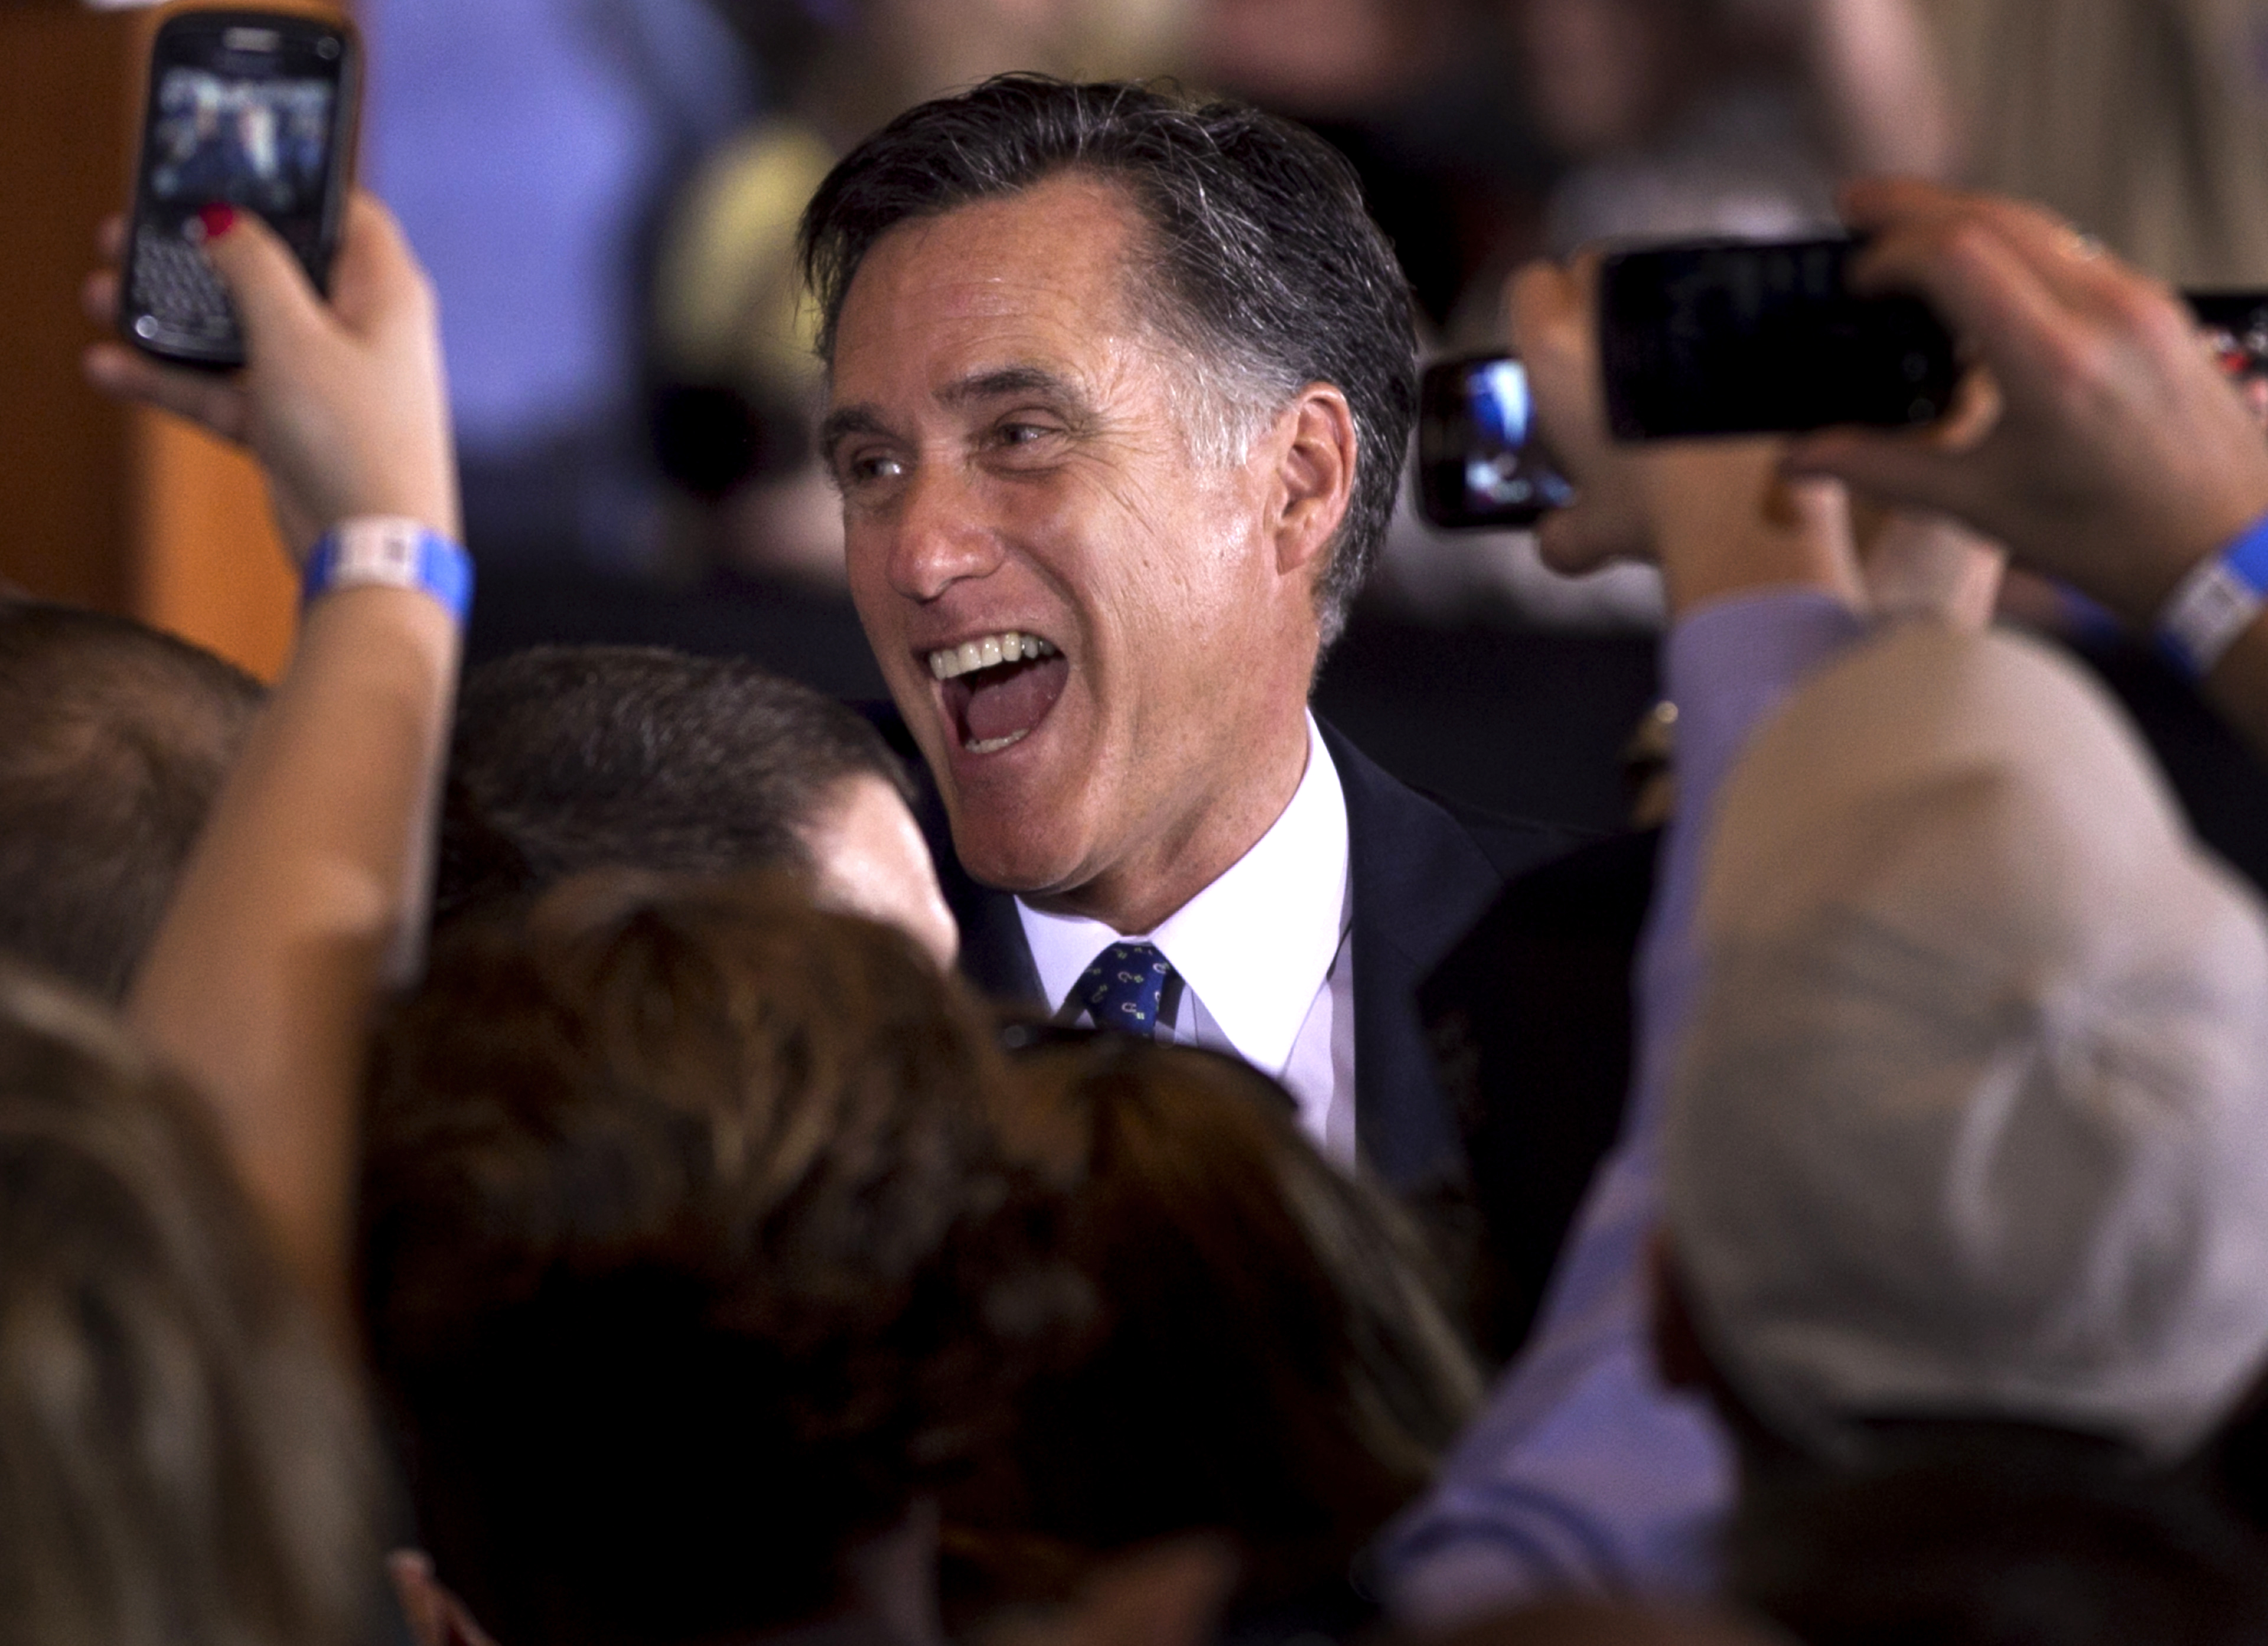 Just nu är det inget Romney behöver oroa sig för, han har en rejäl försprång gentemot de andra republikanerna. 